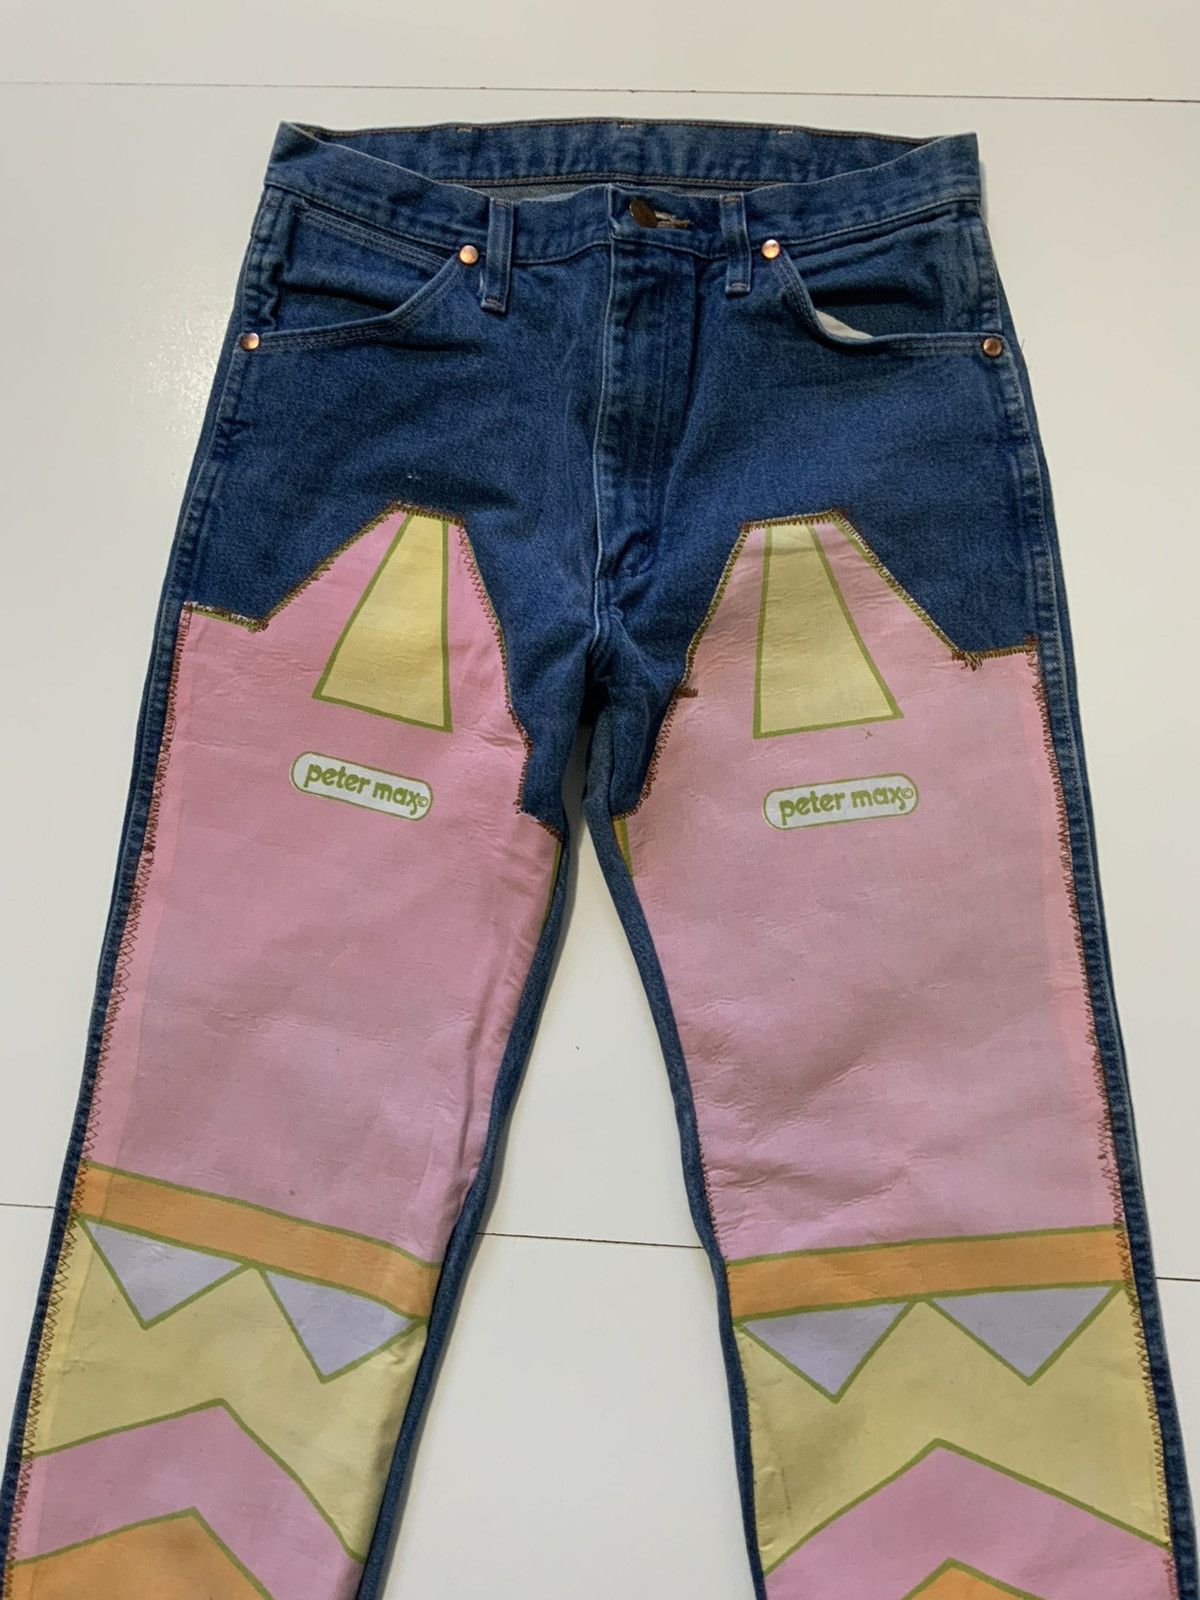 Vintage Vintage Reworked Peter Max Chaps Art Denim Patchwork Jeans Size US 31 - 3 Thumbnail